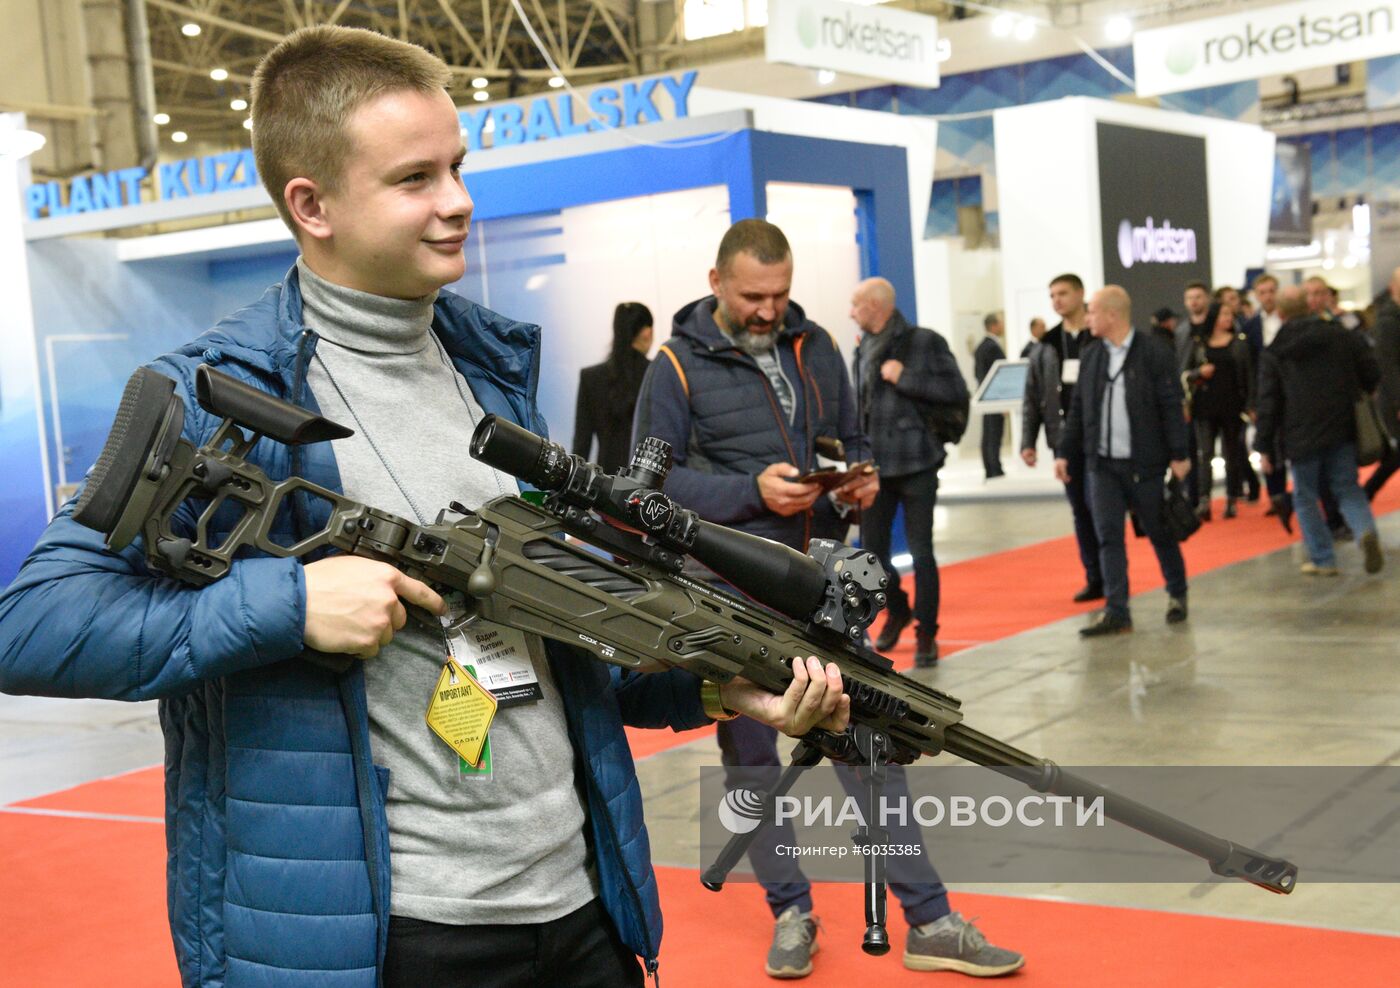 Выставка "Оружие и безопасность - 2019" в Киеве